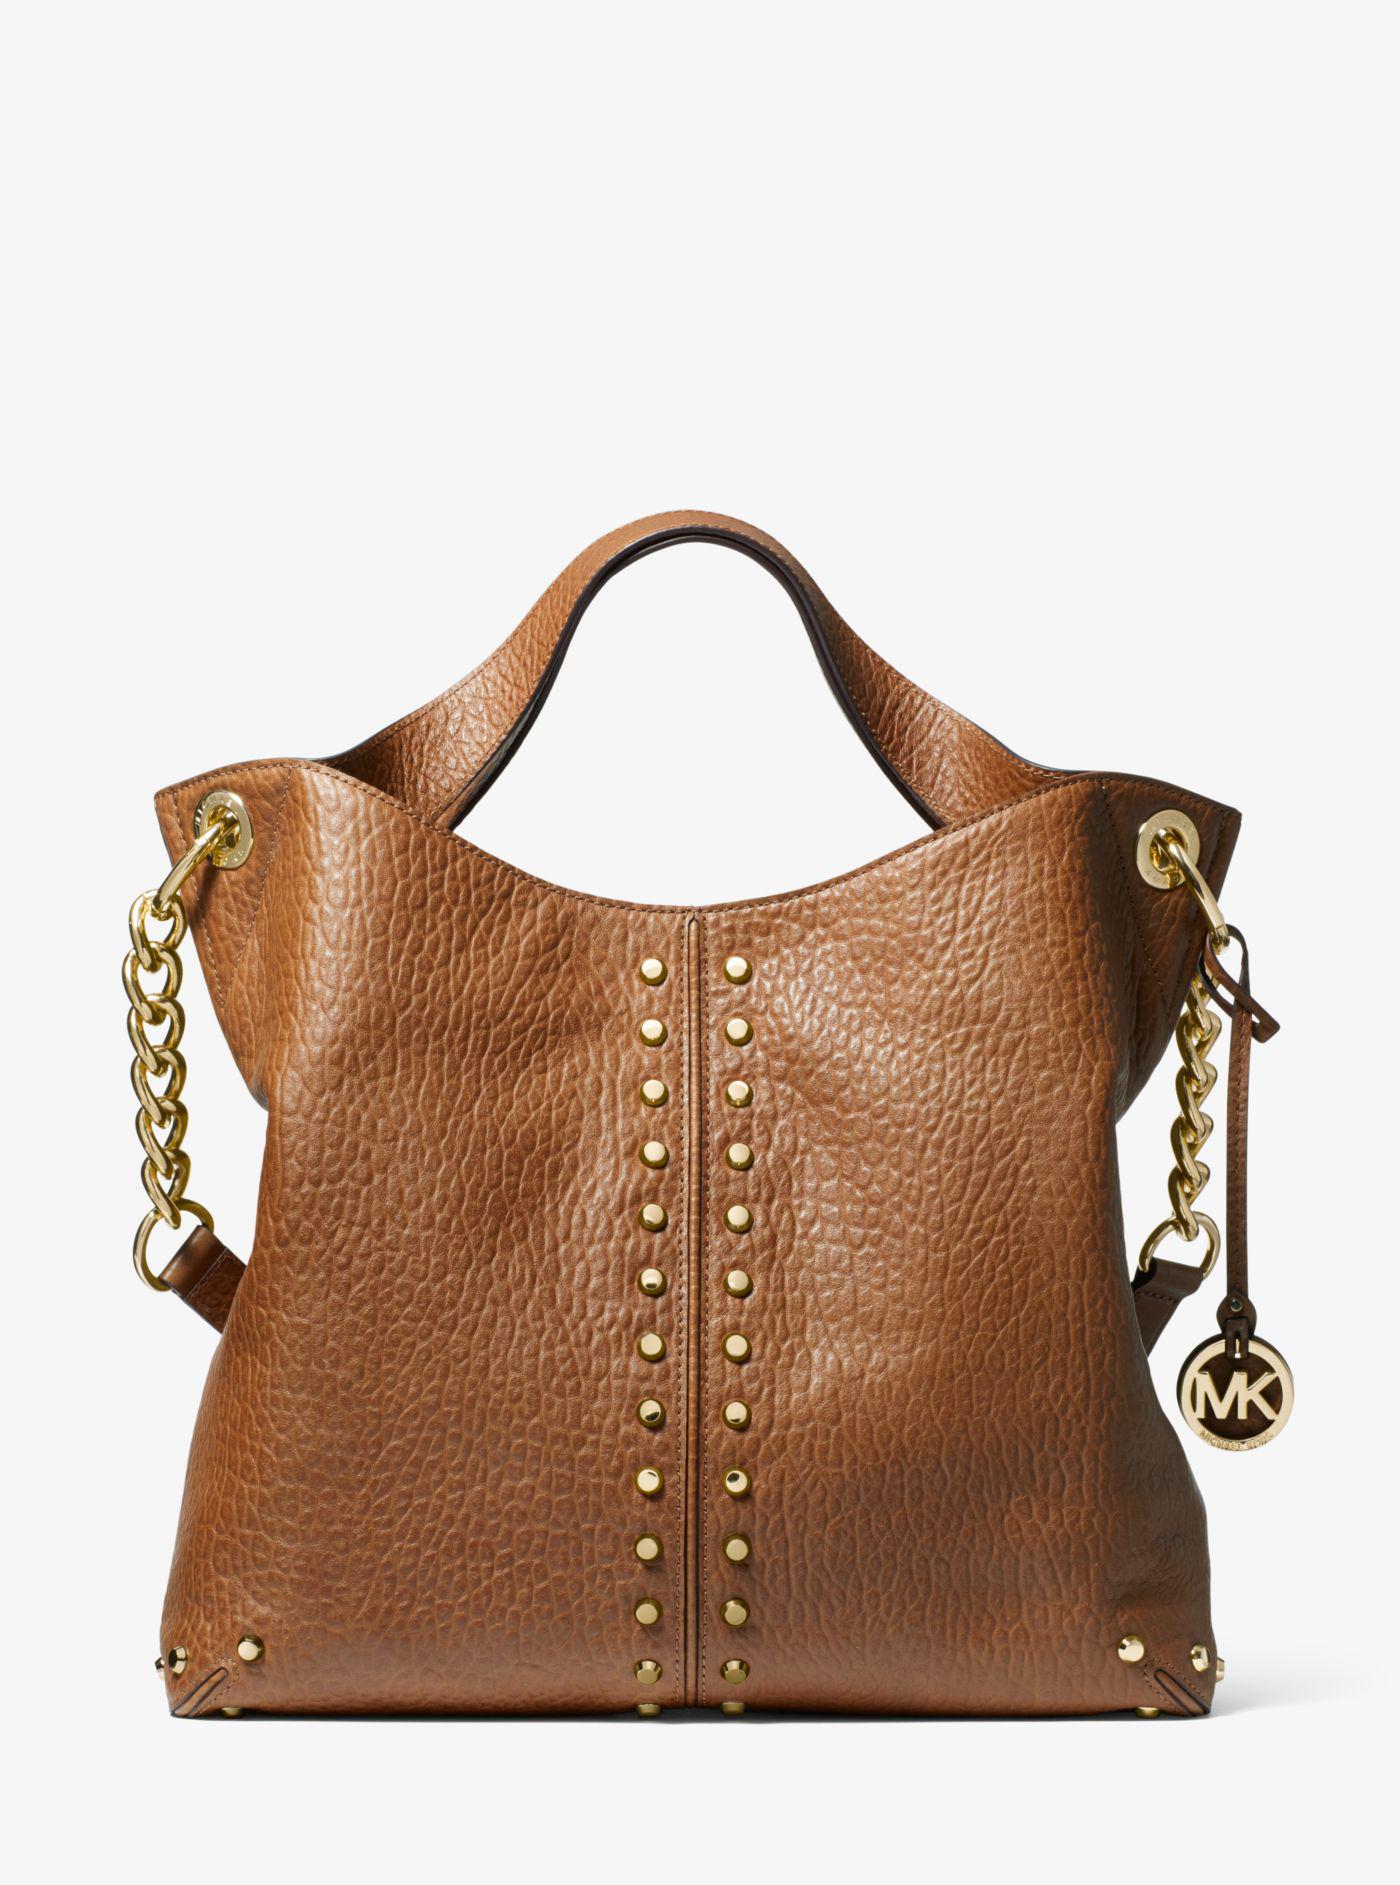 Michael Kors Astor Pebbled Leather Shoulder Bag in Walnut (Brown) - Lyst